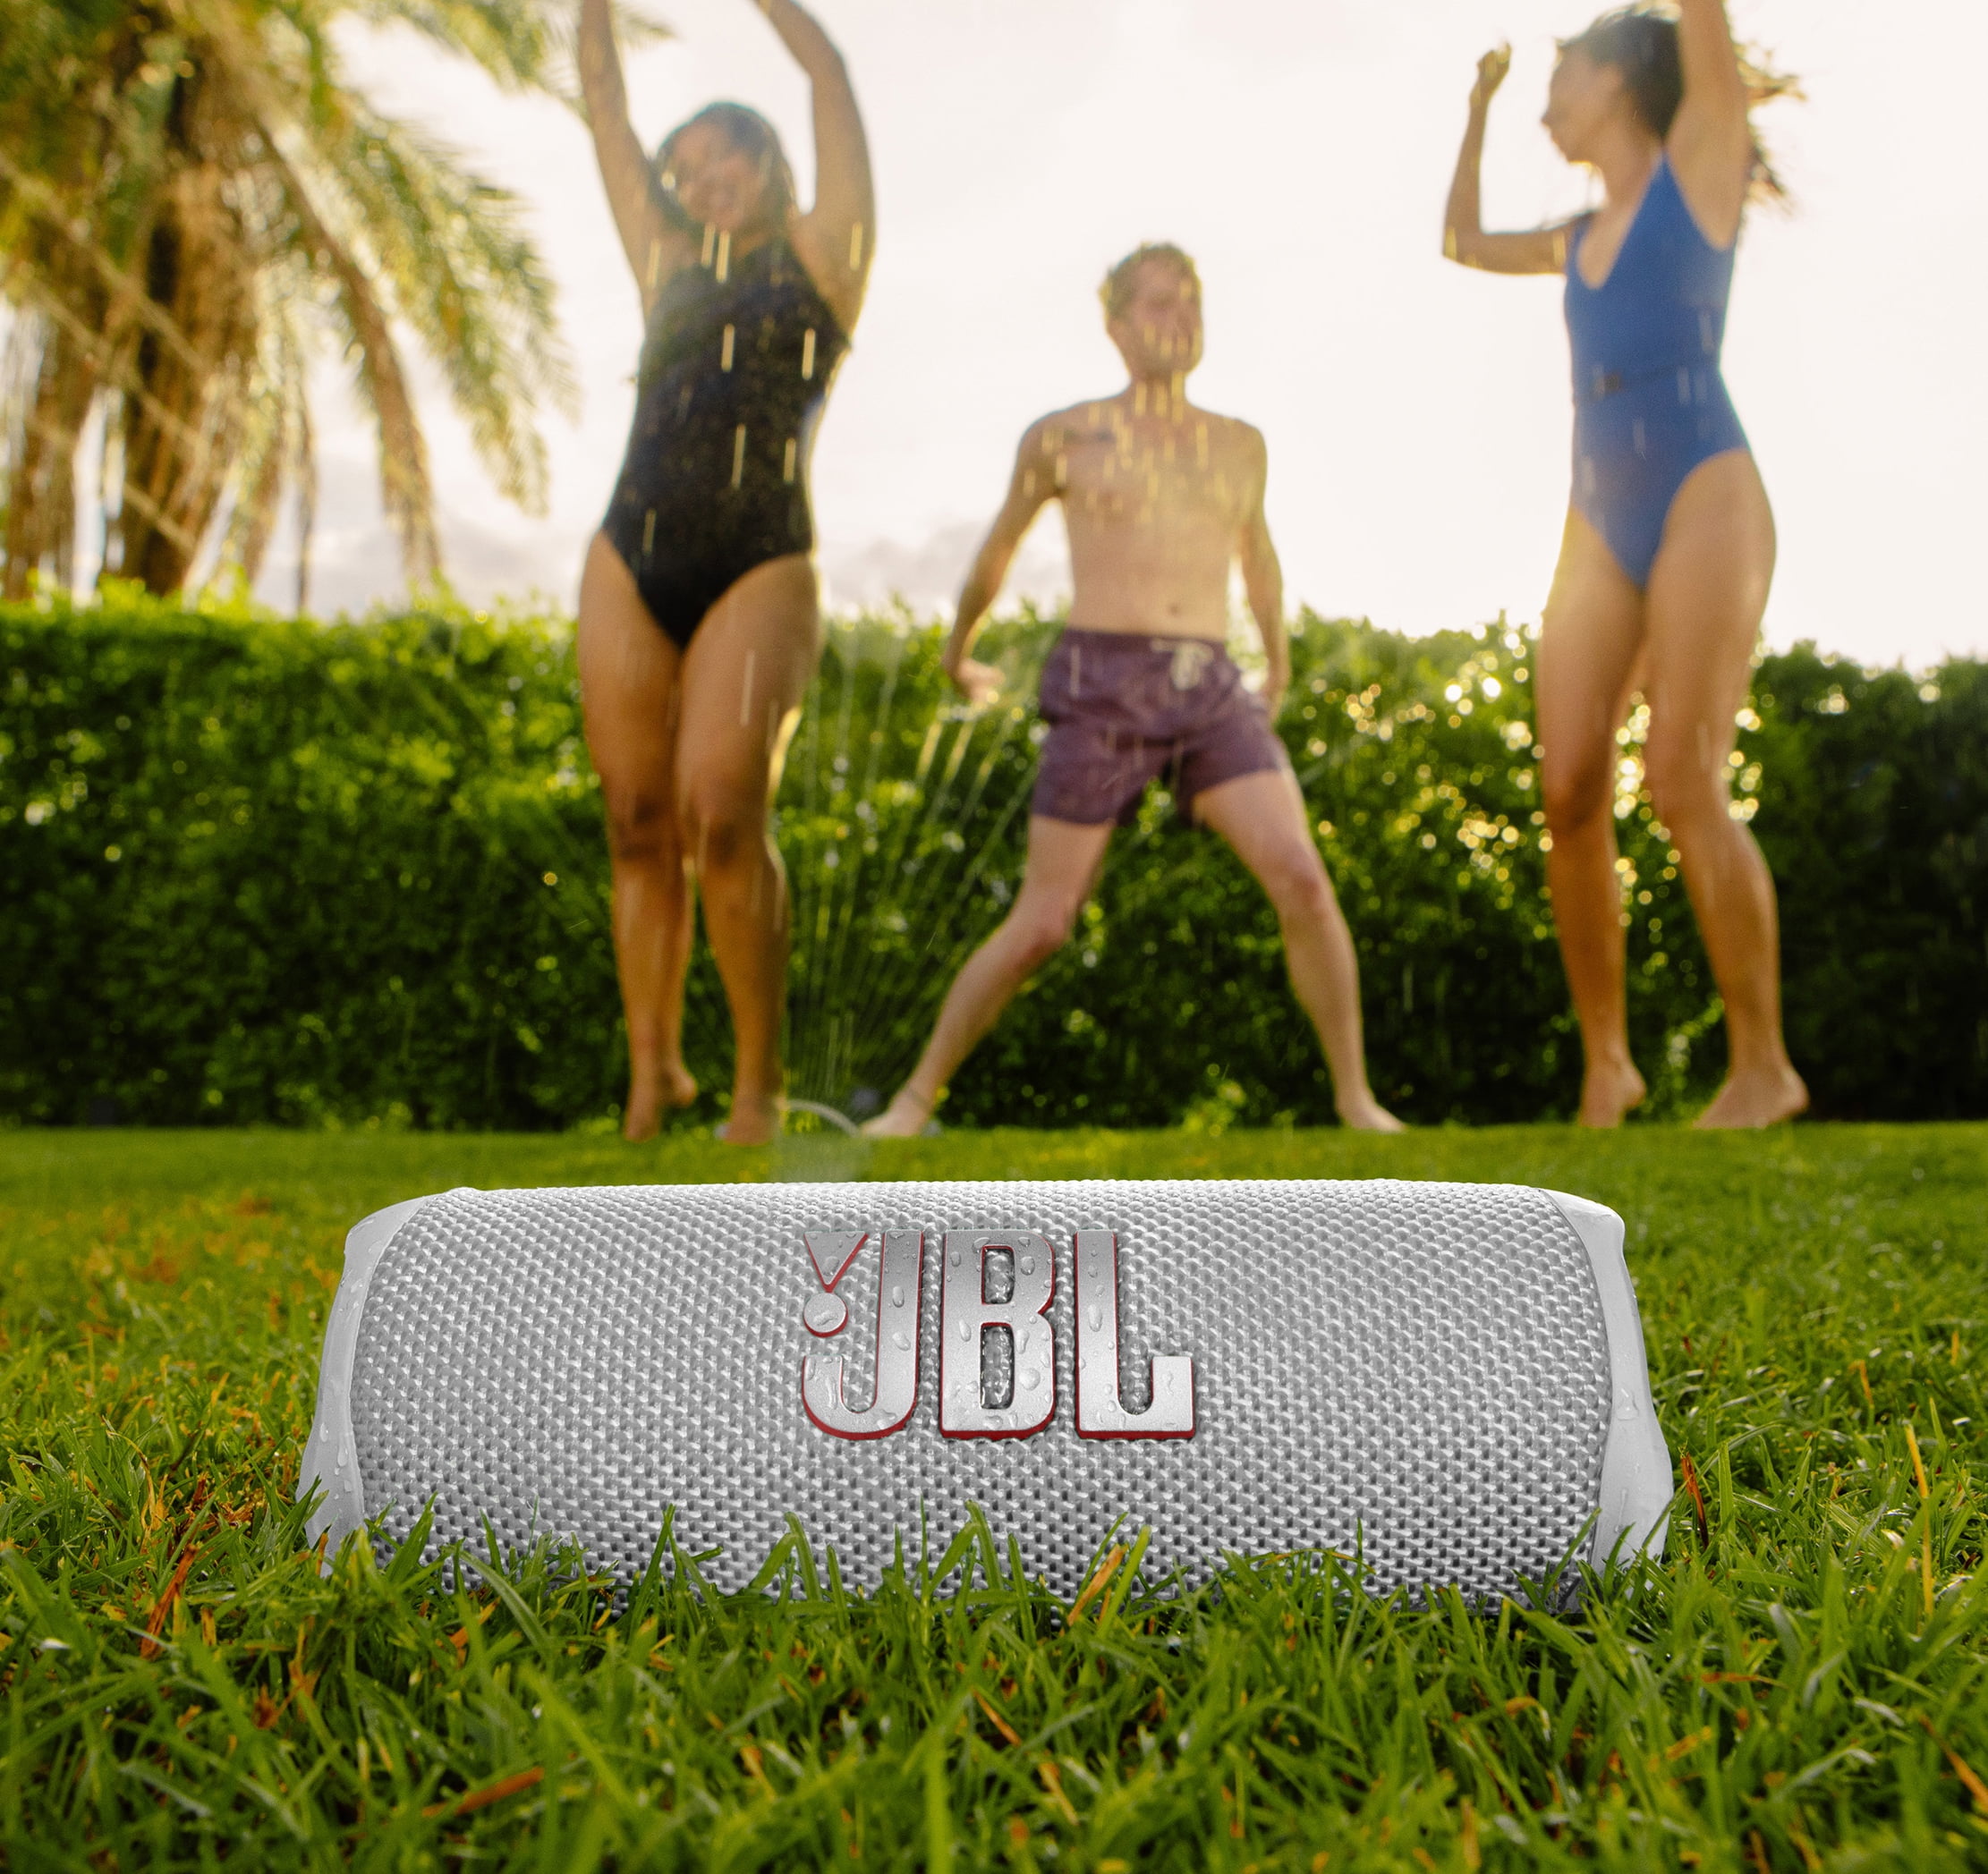 Buy JBL Flip 6 Portable Bluetooth Speaker - White